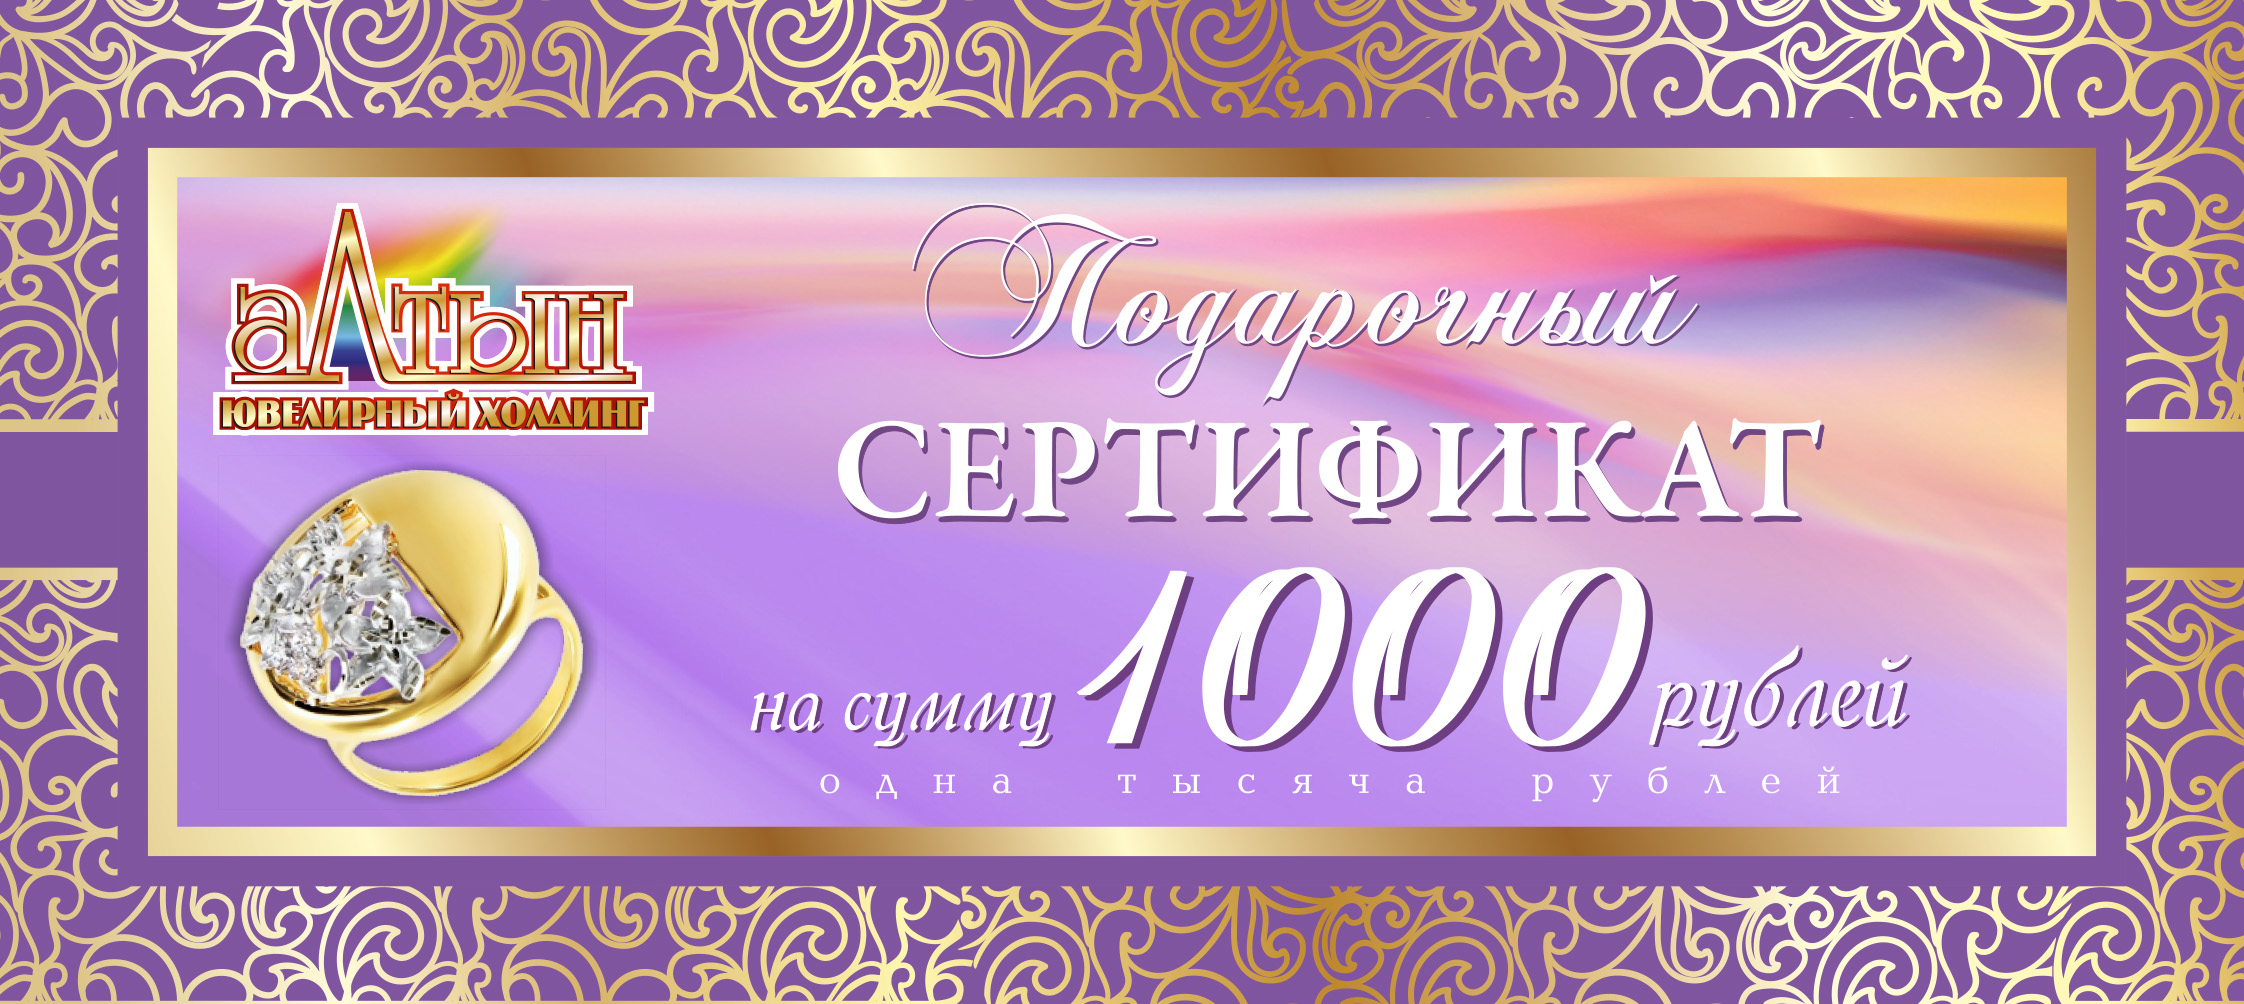 Подарочный сертификат на 1000 RUB